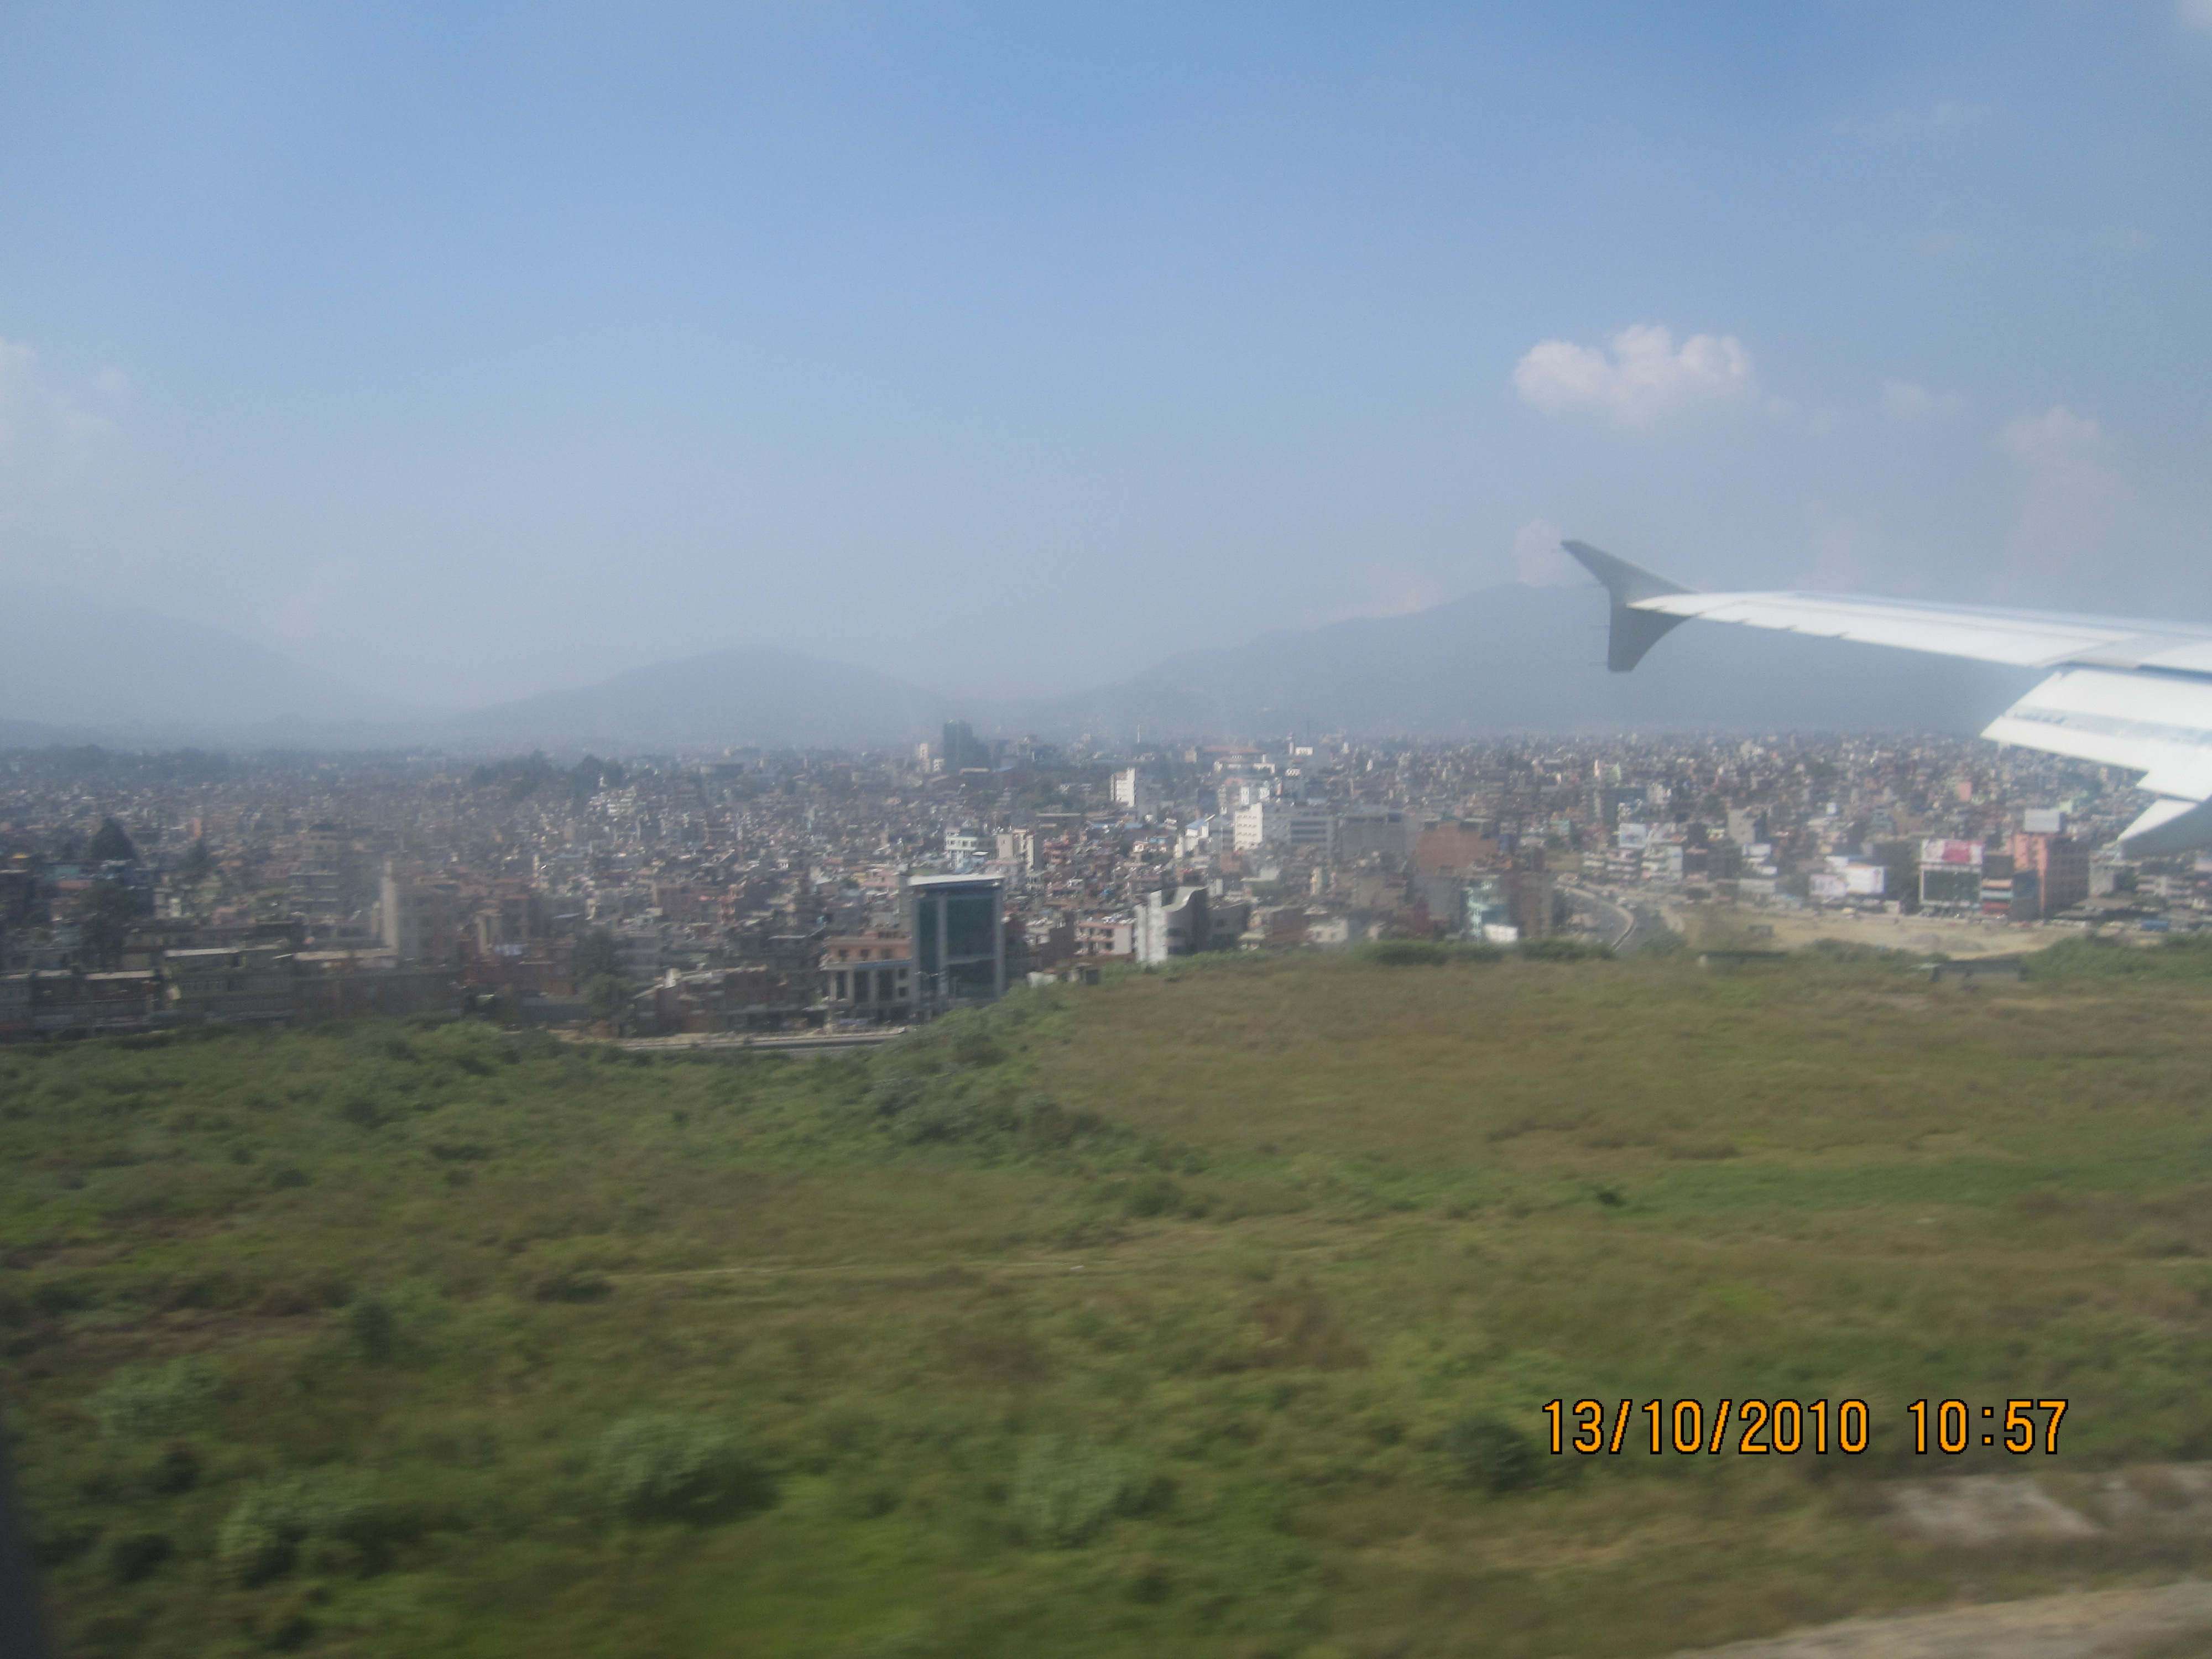 Tribhuvan International Airport